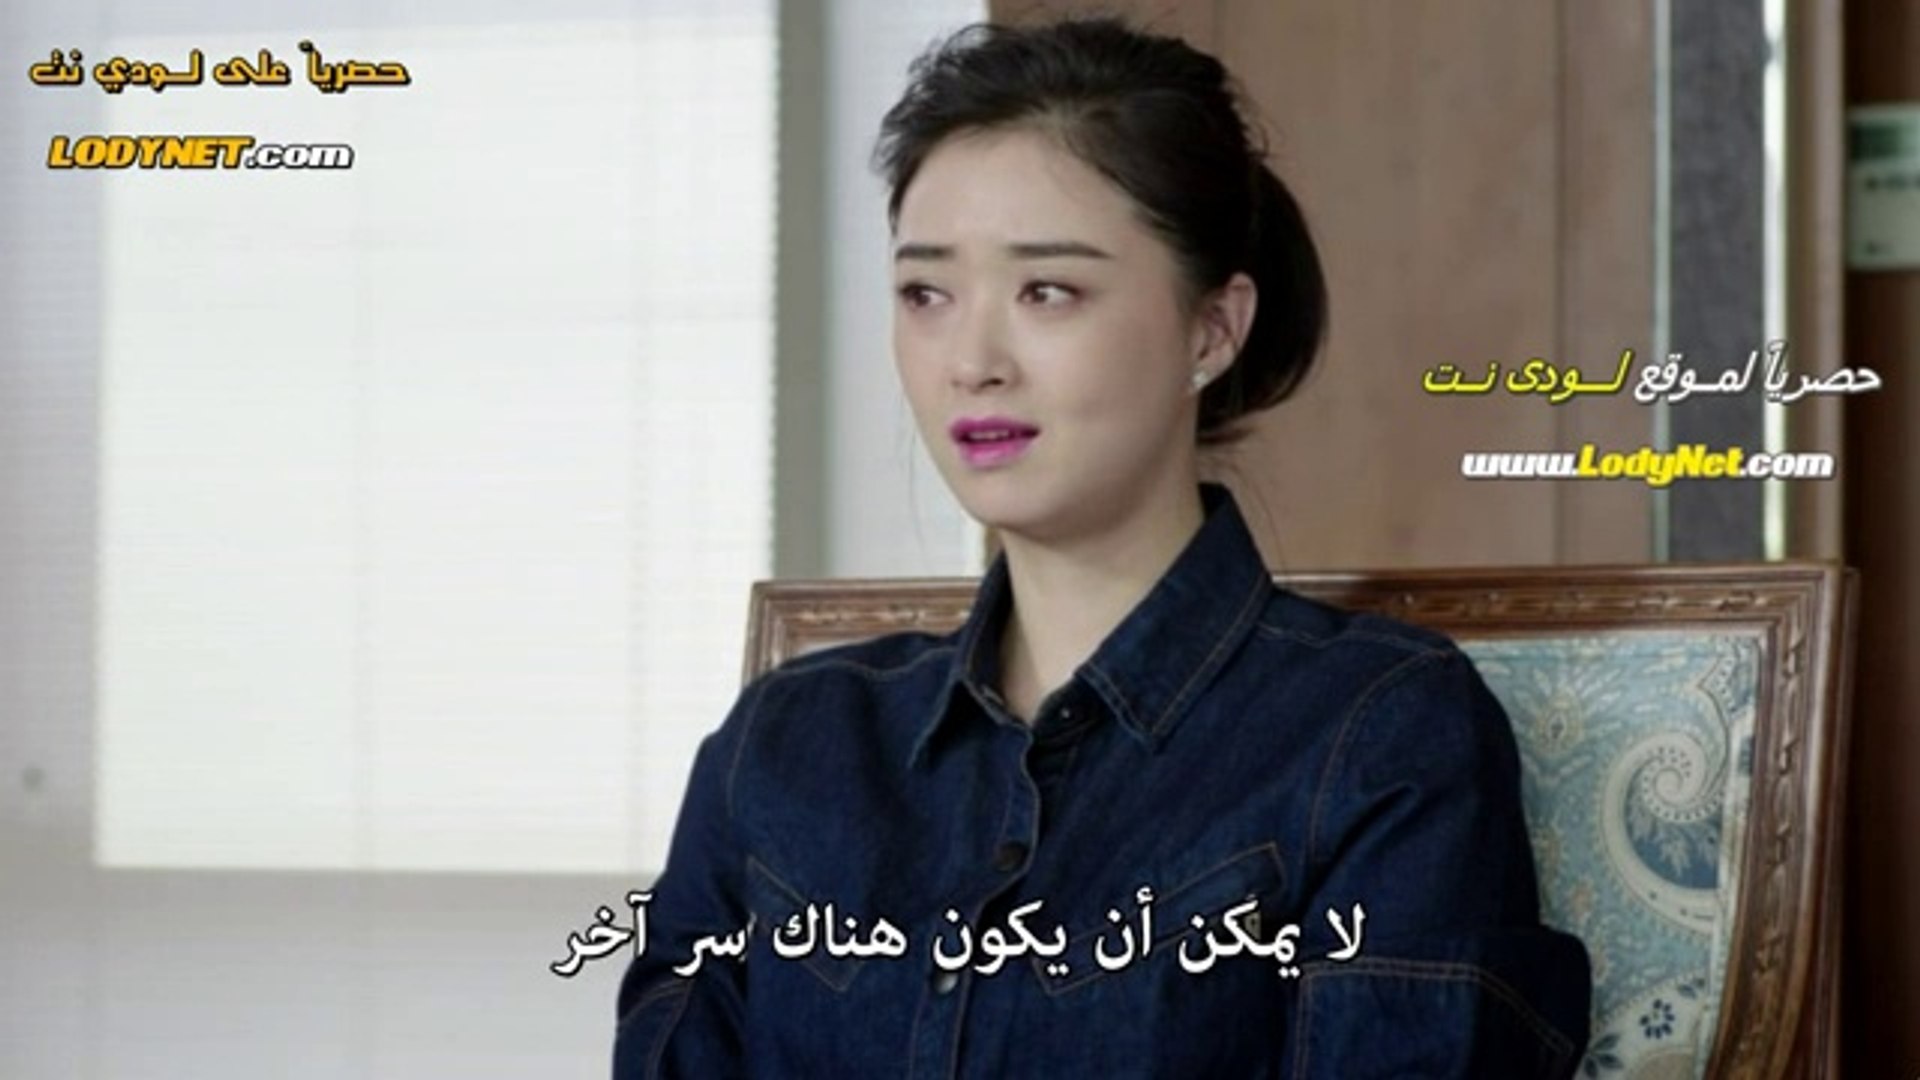 المسلسل الصيني الورثة الحلقة 6 مترجم بالعربي فيديو Dailymotion